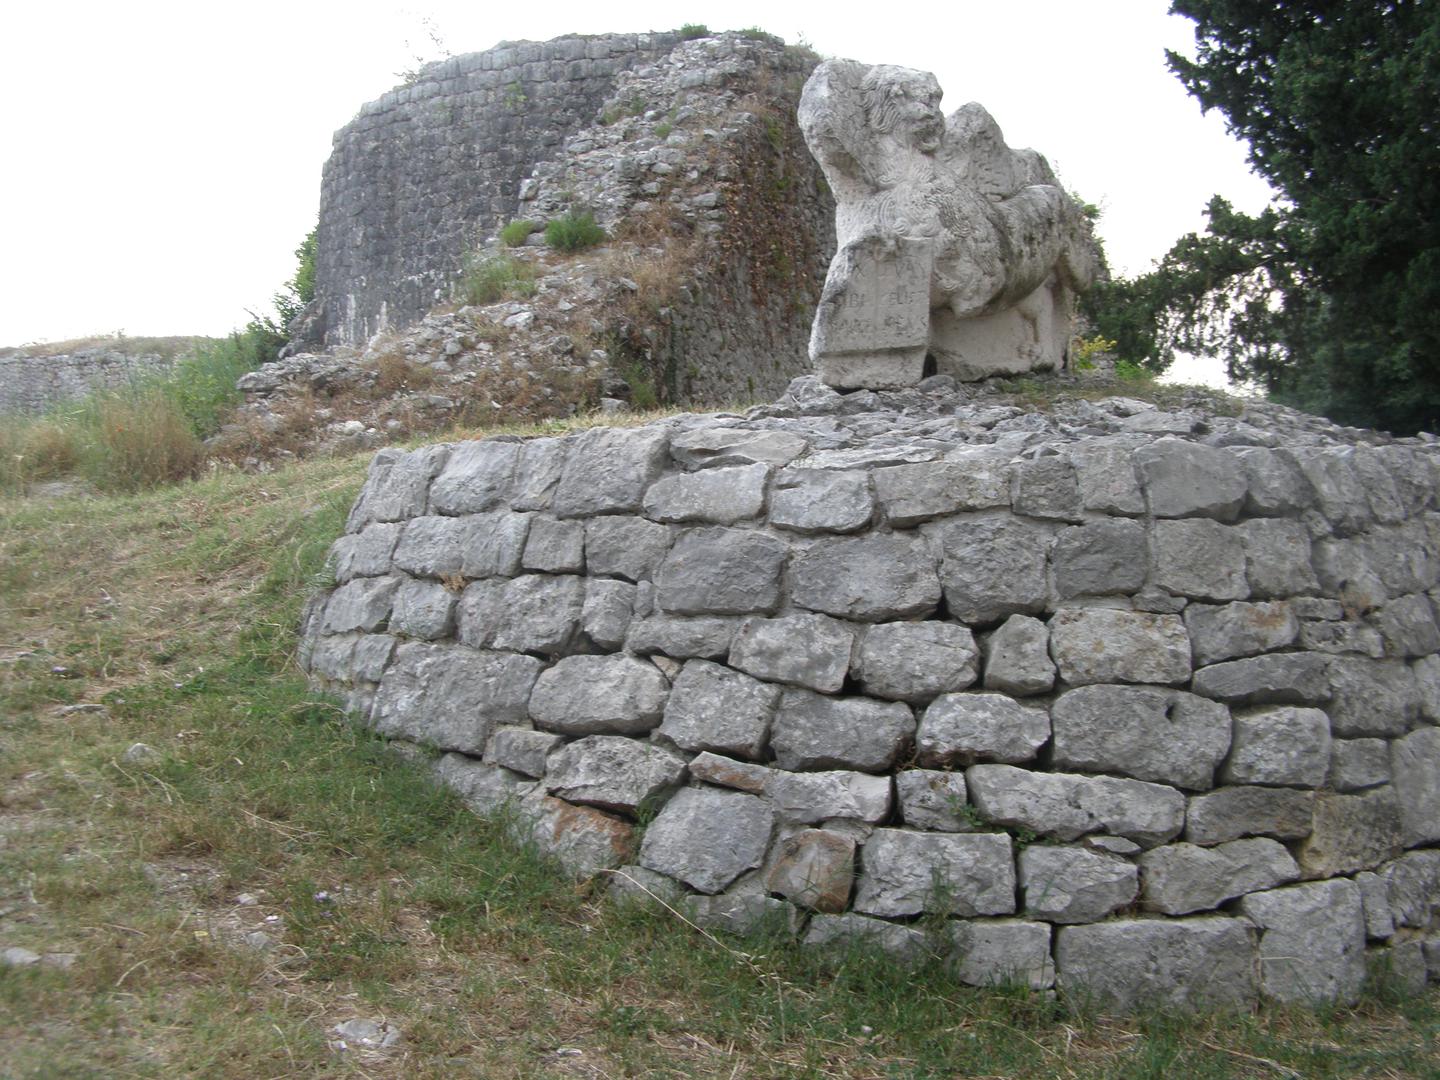 Ostaci mletačkih i turskih zidina na području Gabele, gdje je, tvrdio je Salinas, bila Troja i gdje se vodila velika bitka